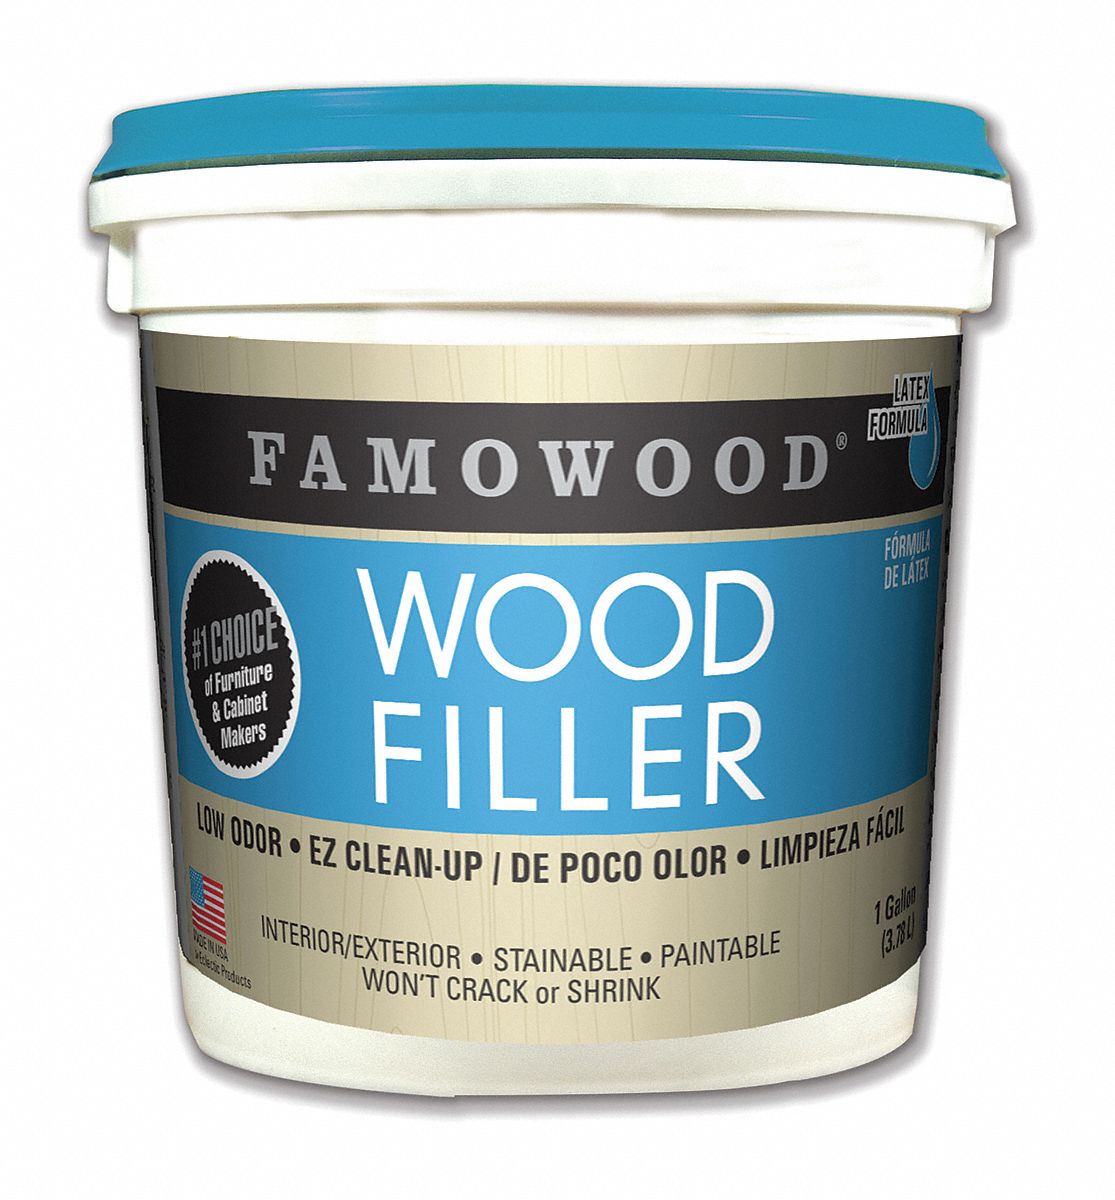 Filler: Original Wood Filler, 192 oz Container Size, Pail, Fir-Maple, Wood Filler